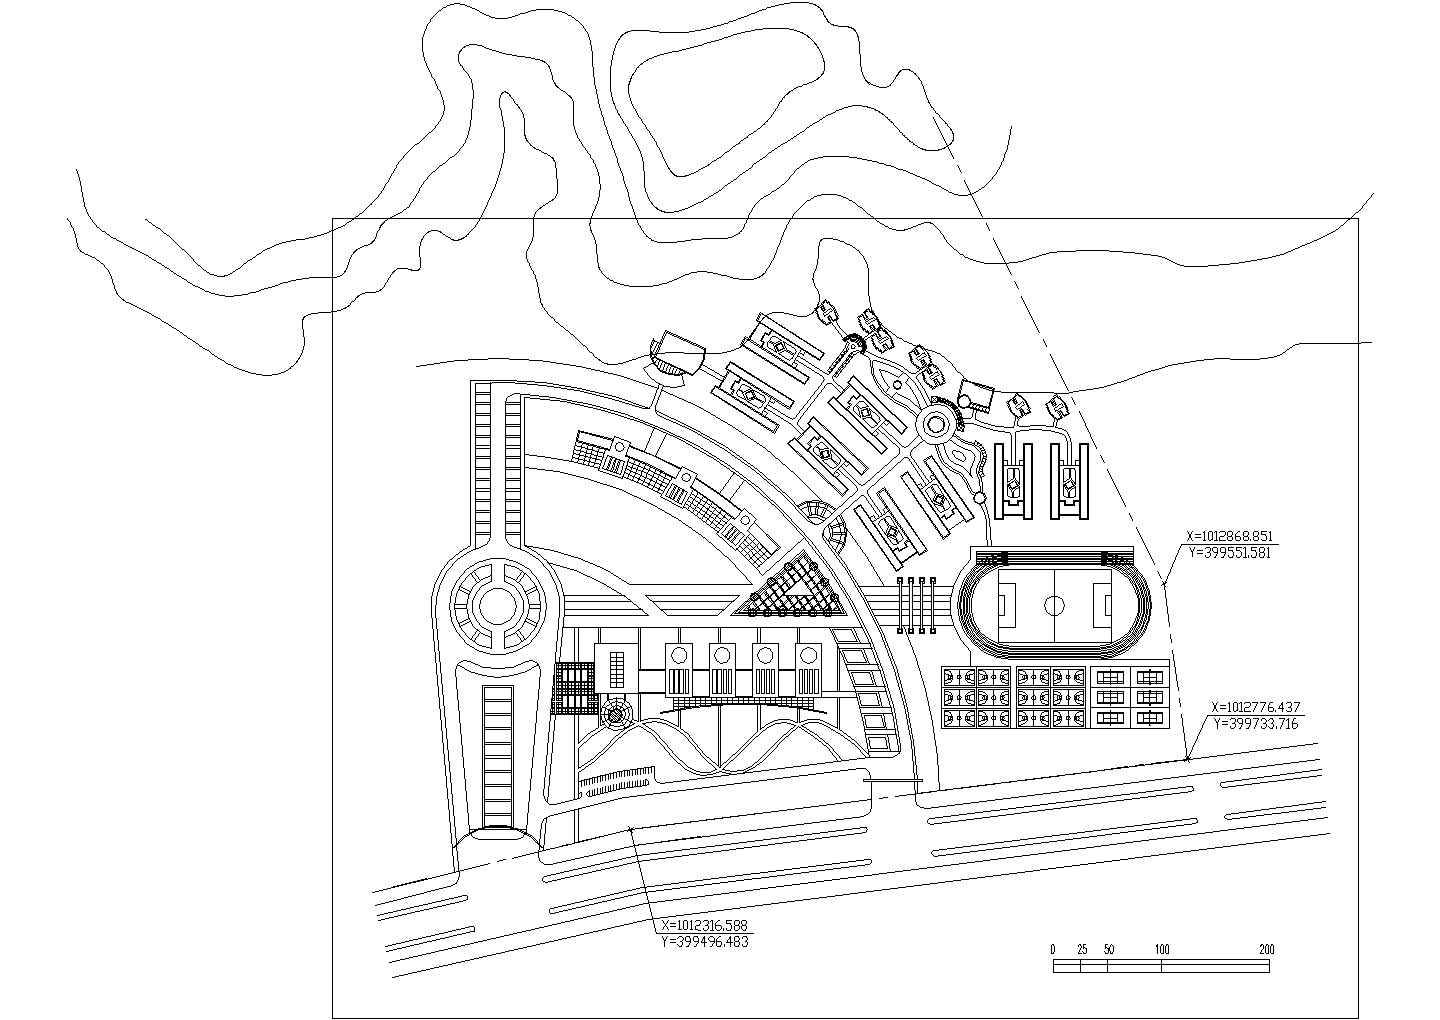 北京师范大学珠海校区总体规划（某甲级院设计）